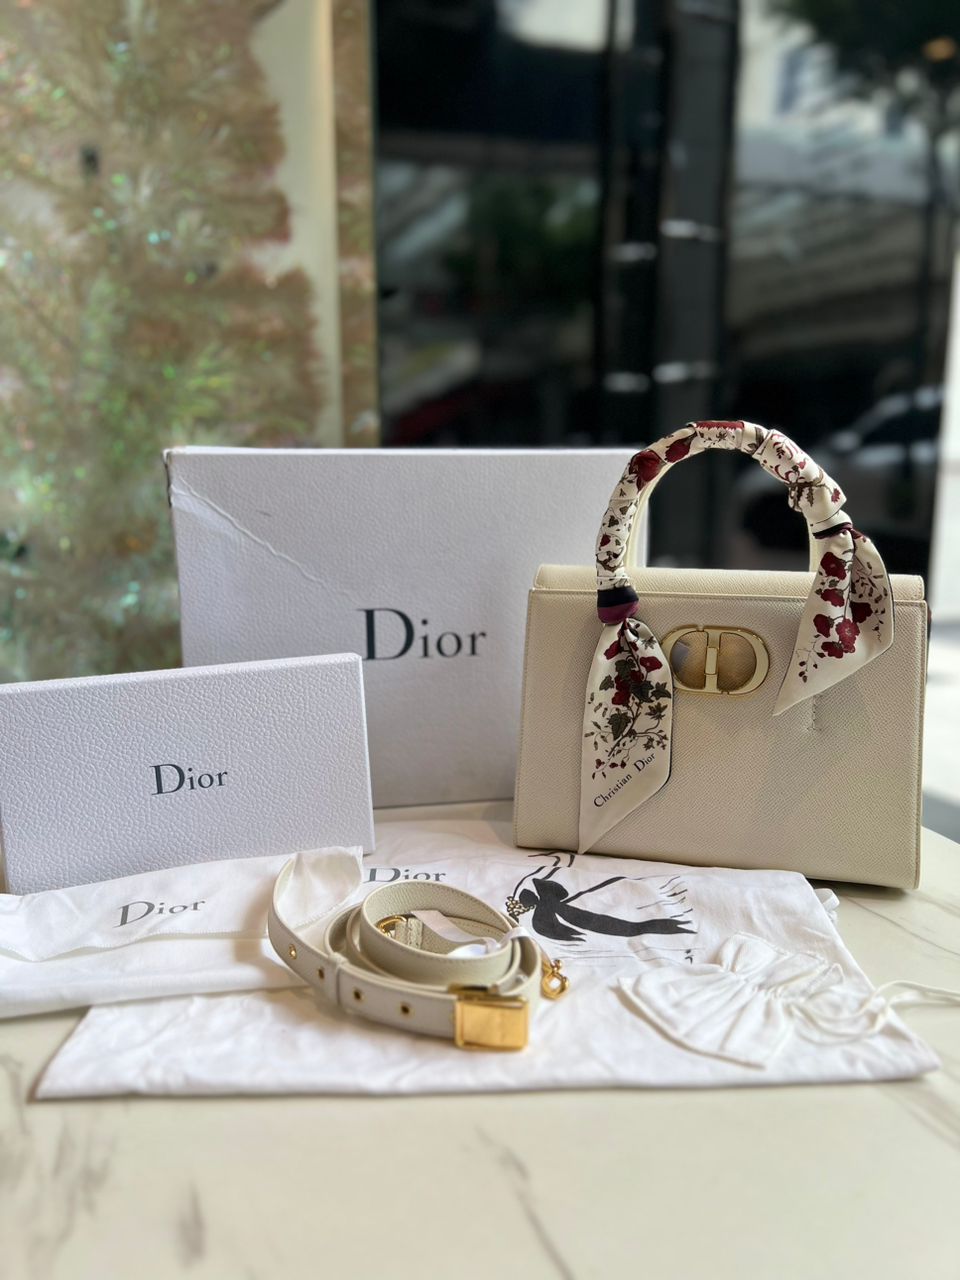 Christian Dior ST Honoré Leather Handbag